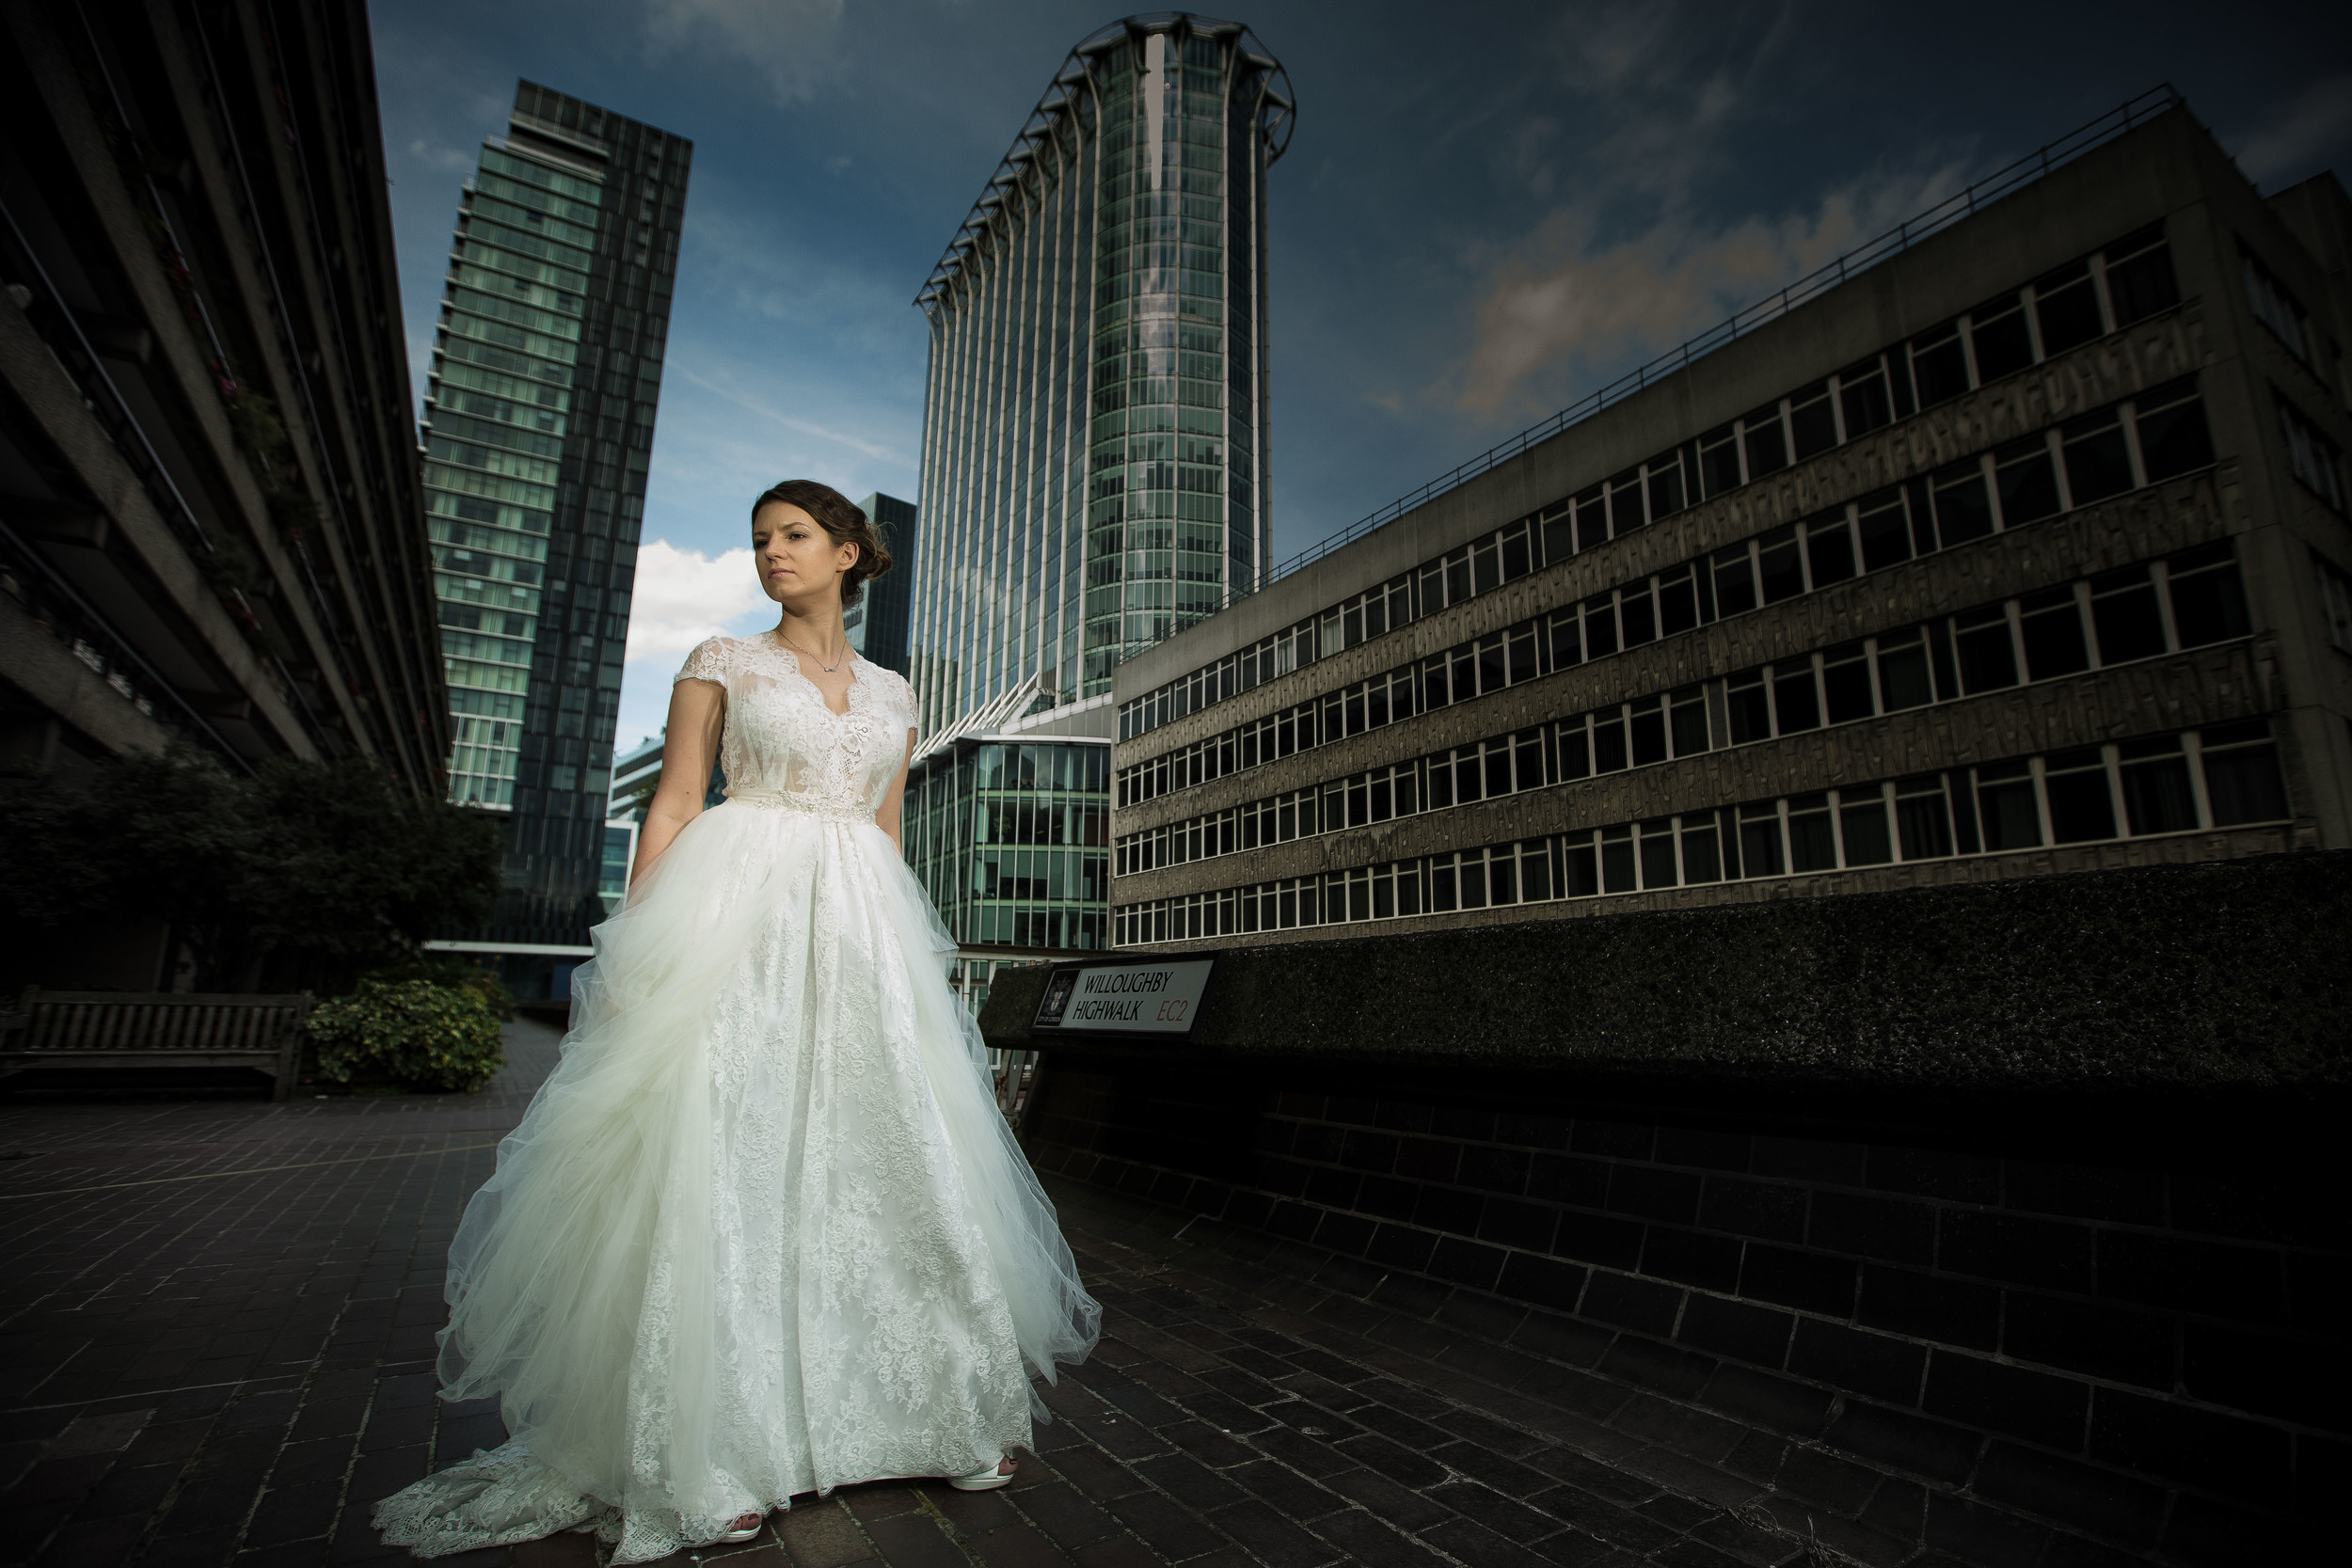 russian-bride-barbican-london-uk-destination-wedding-photography-Adam-Rowley